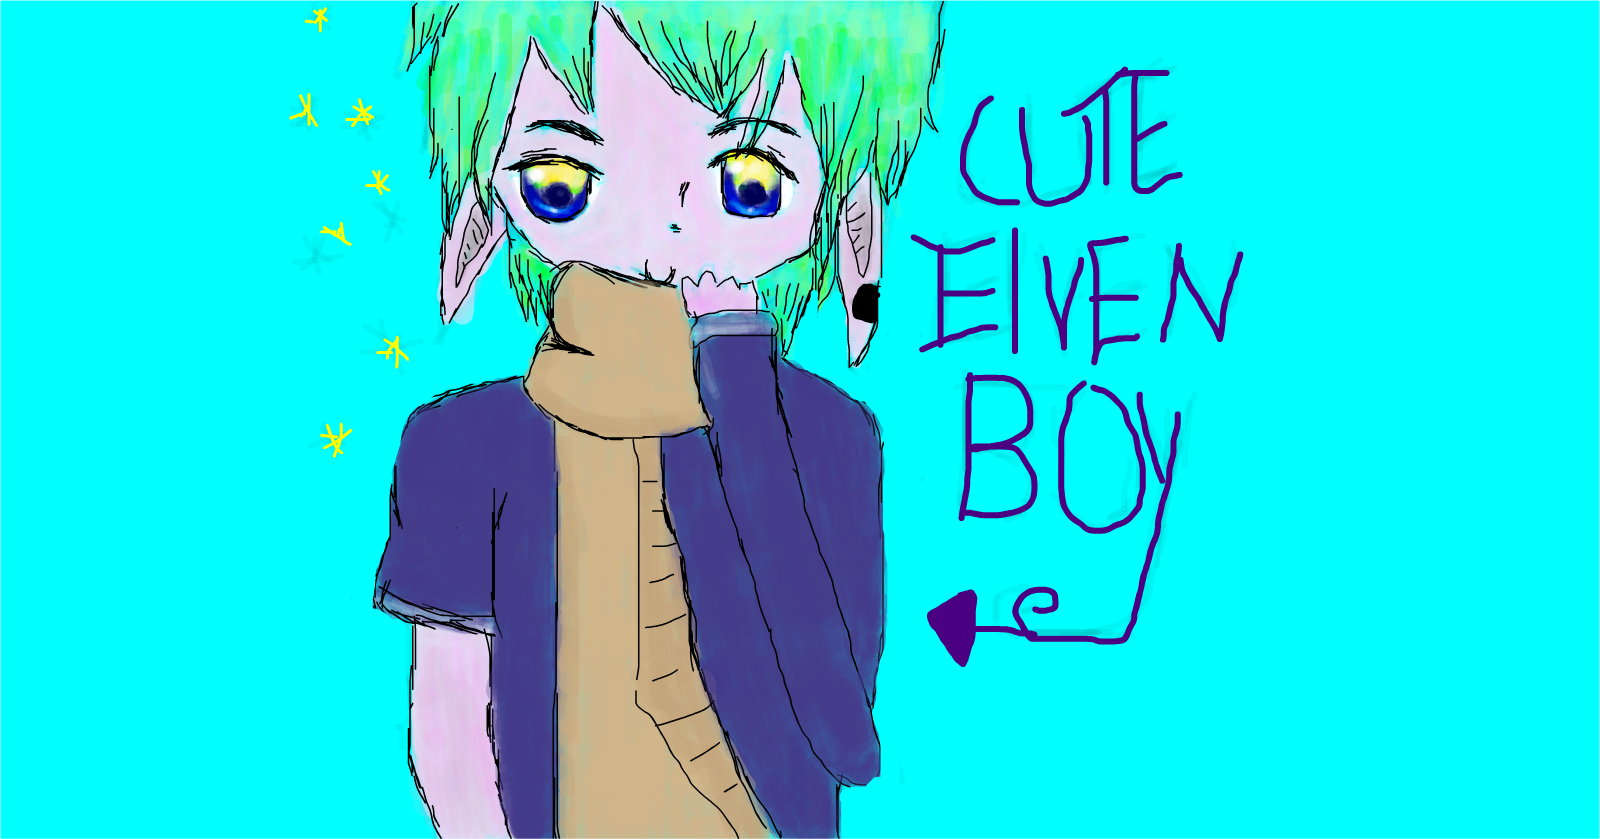 Cute Elven Boy